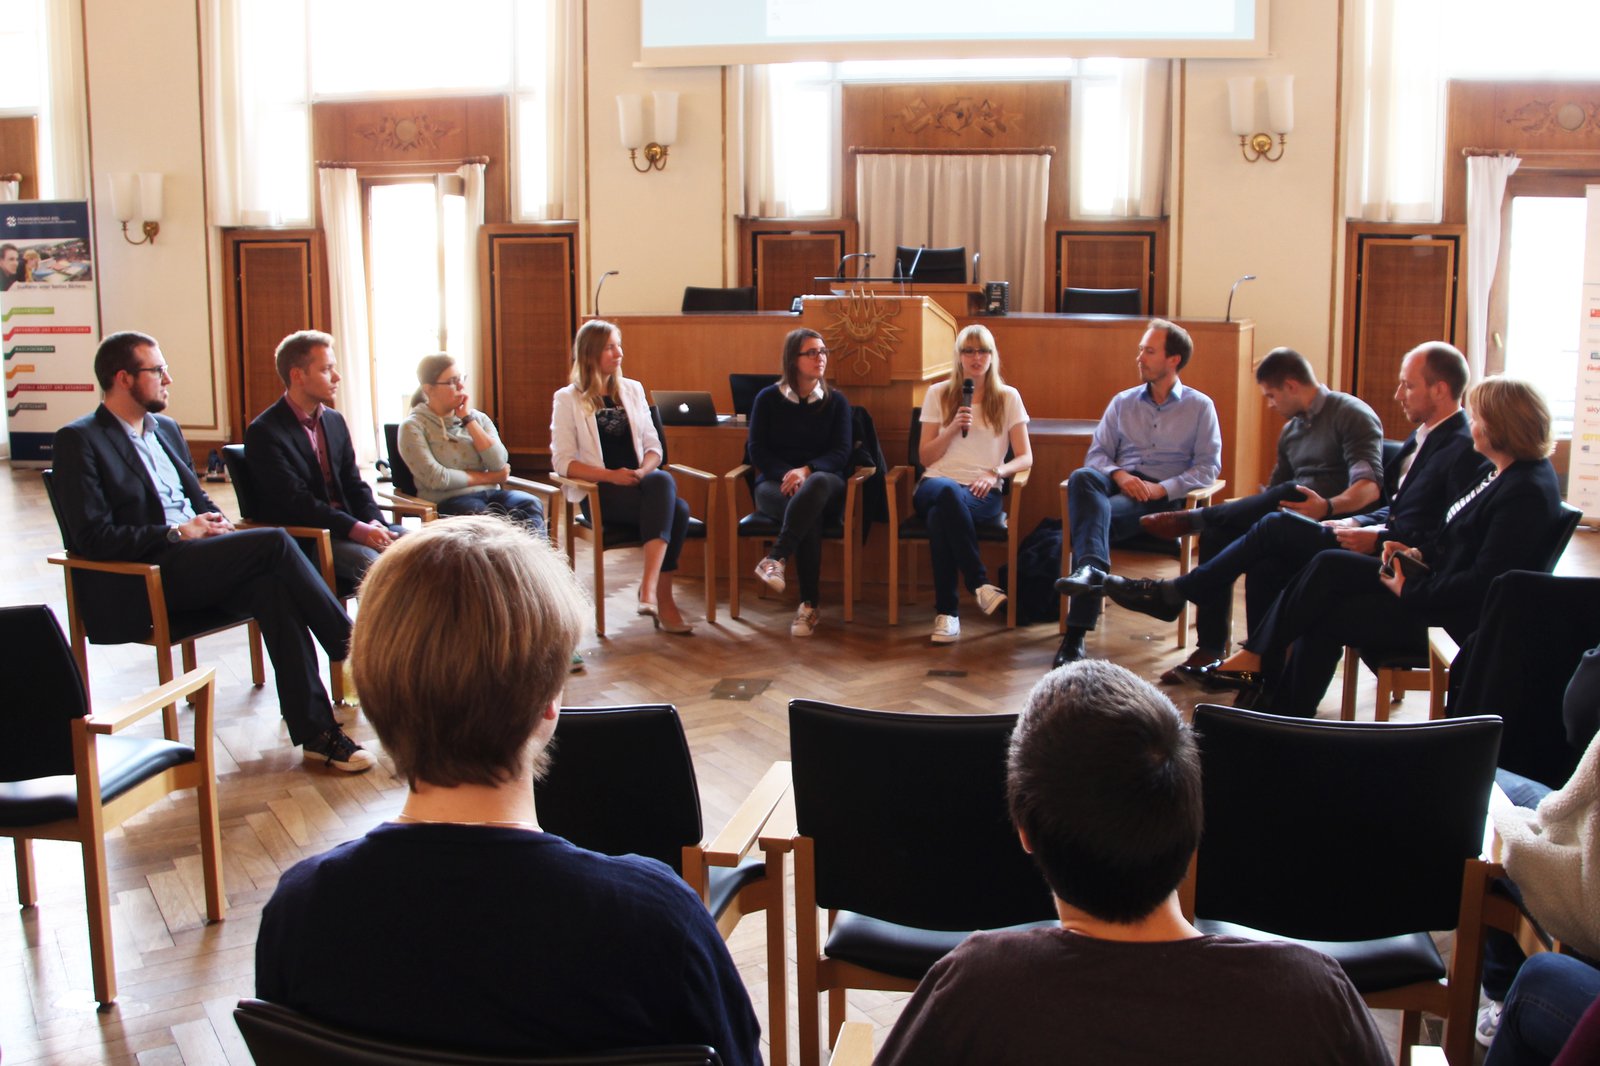 Ein Stuhlkreis in dem eine gemischte Gruppe von Menschen sitzt und diskutiert. Der Raum enthält sehr viele hölzerne Elemente.